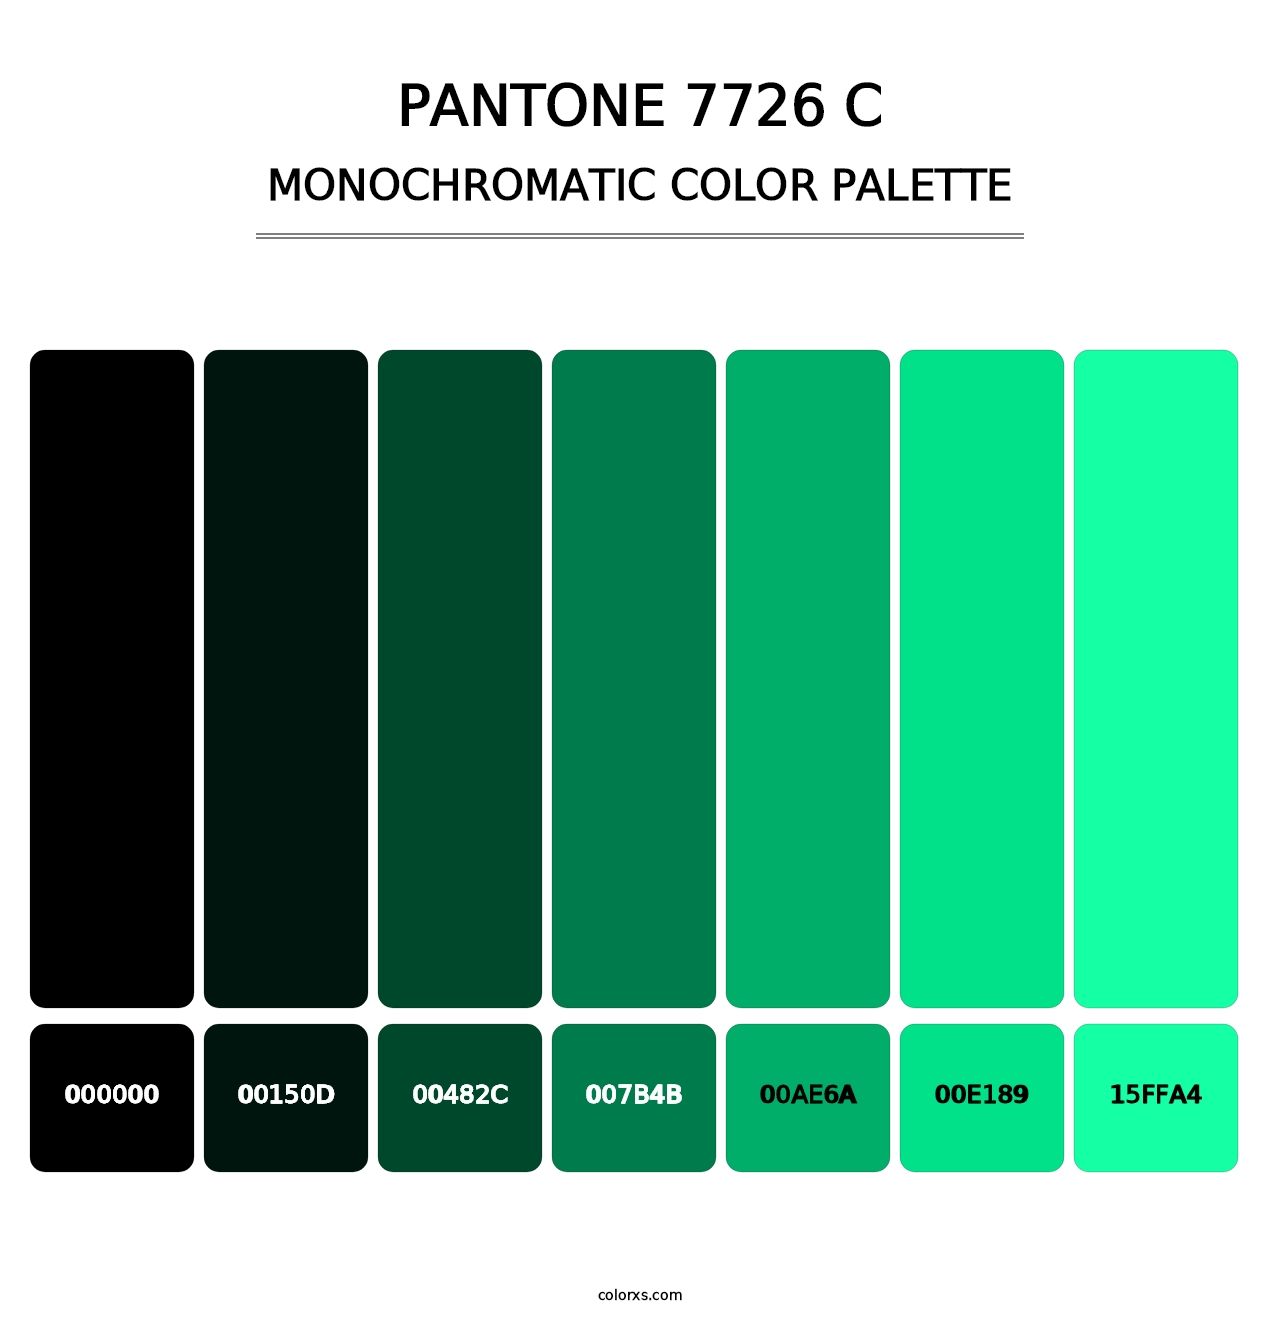 PANTONE 7726 C - Monochromatic Color Palette